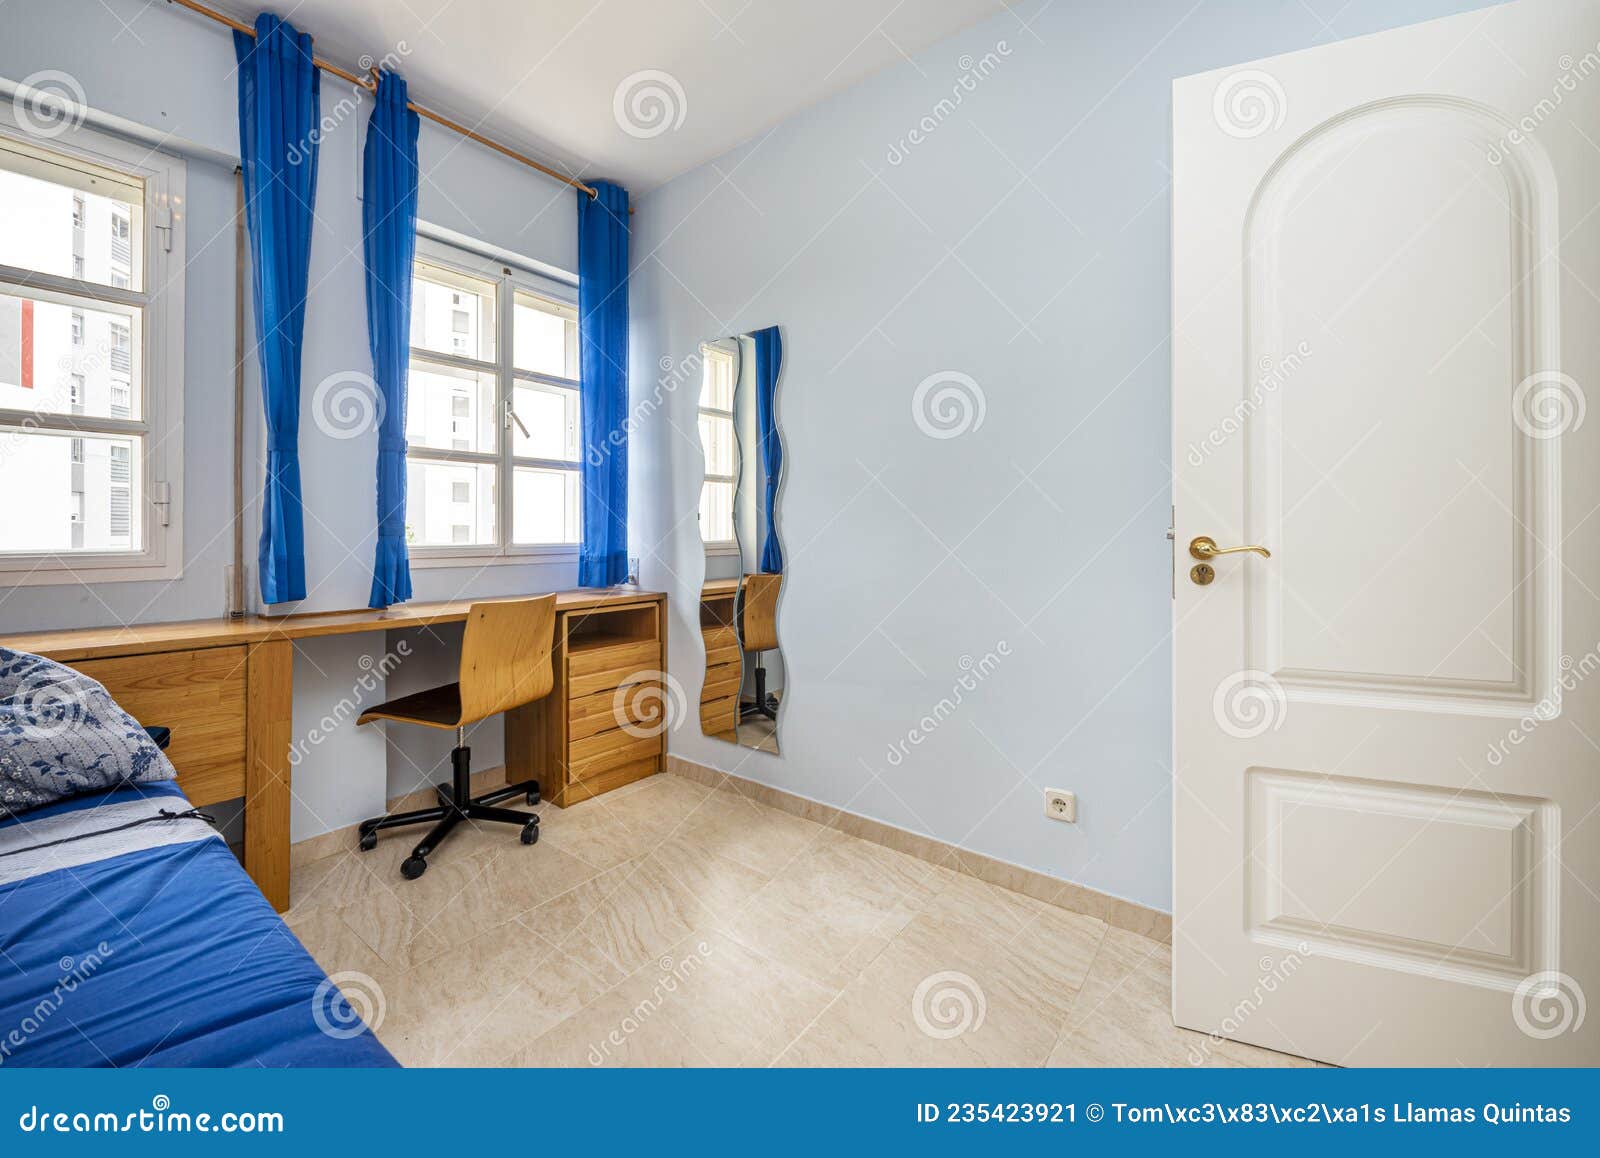 https://thumbs.dreamstime.com/z/dormitorio-juvenil-con-cortinas-de-escritorio-madera-cerezo-y-ropa-cama-azul-235423921.jpg